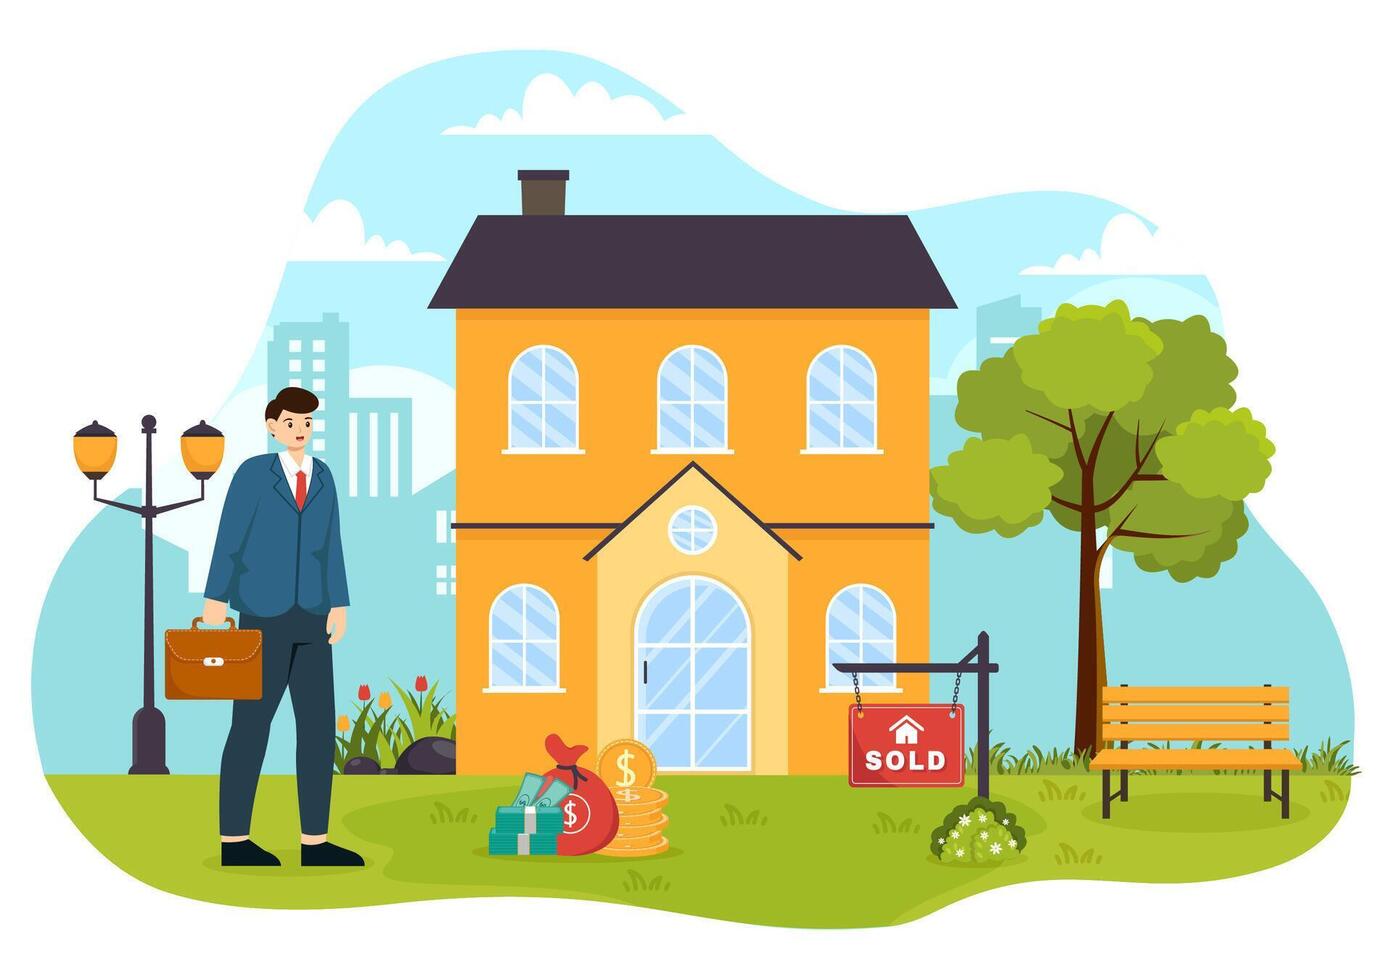 Land Makler Vektor Illustration mit Überbrückung Investoren oder Käufer und Verkäufer Agent zum besorgen, Miete und verkaufen Eigentum im eben Karikatur Hintergrund